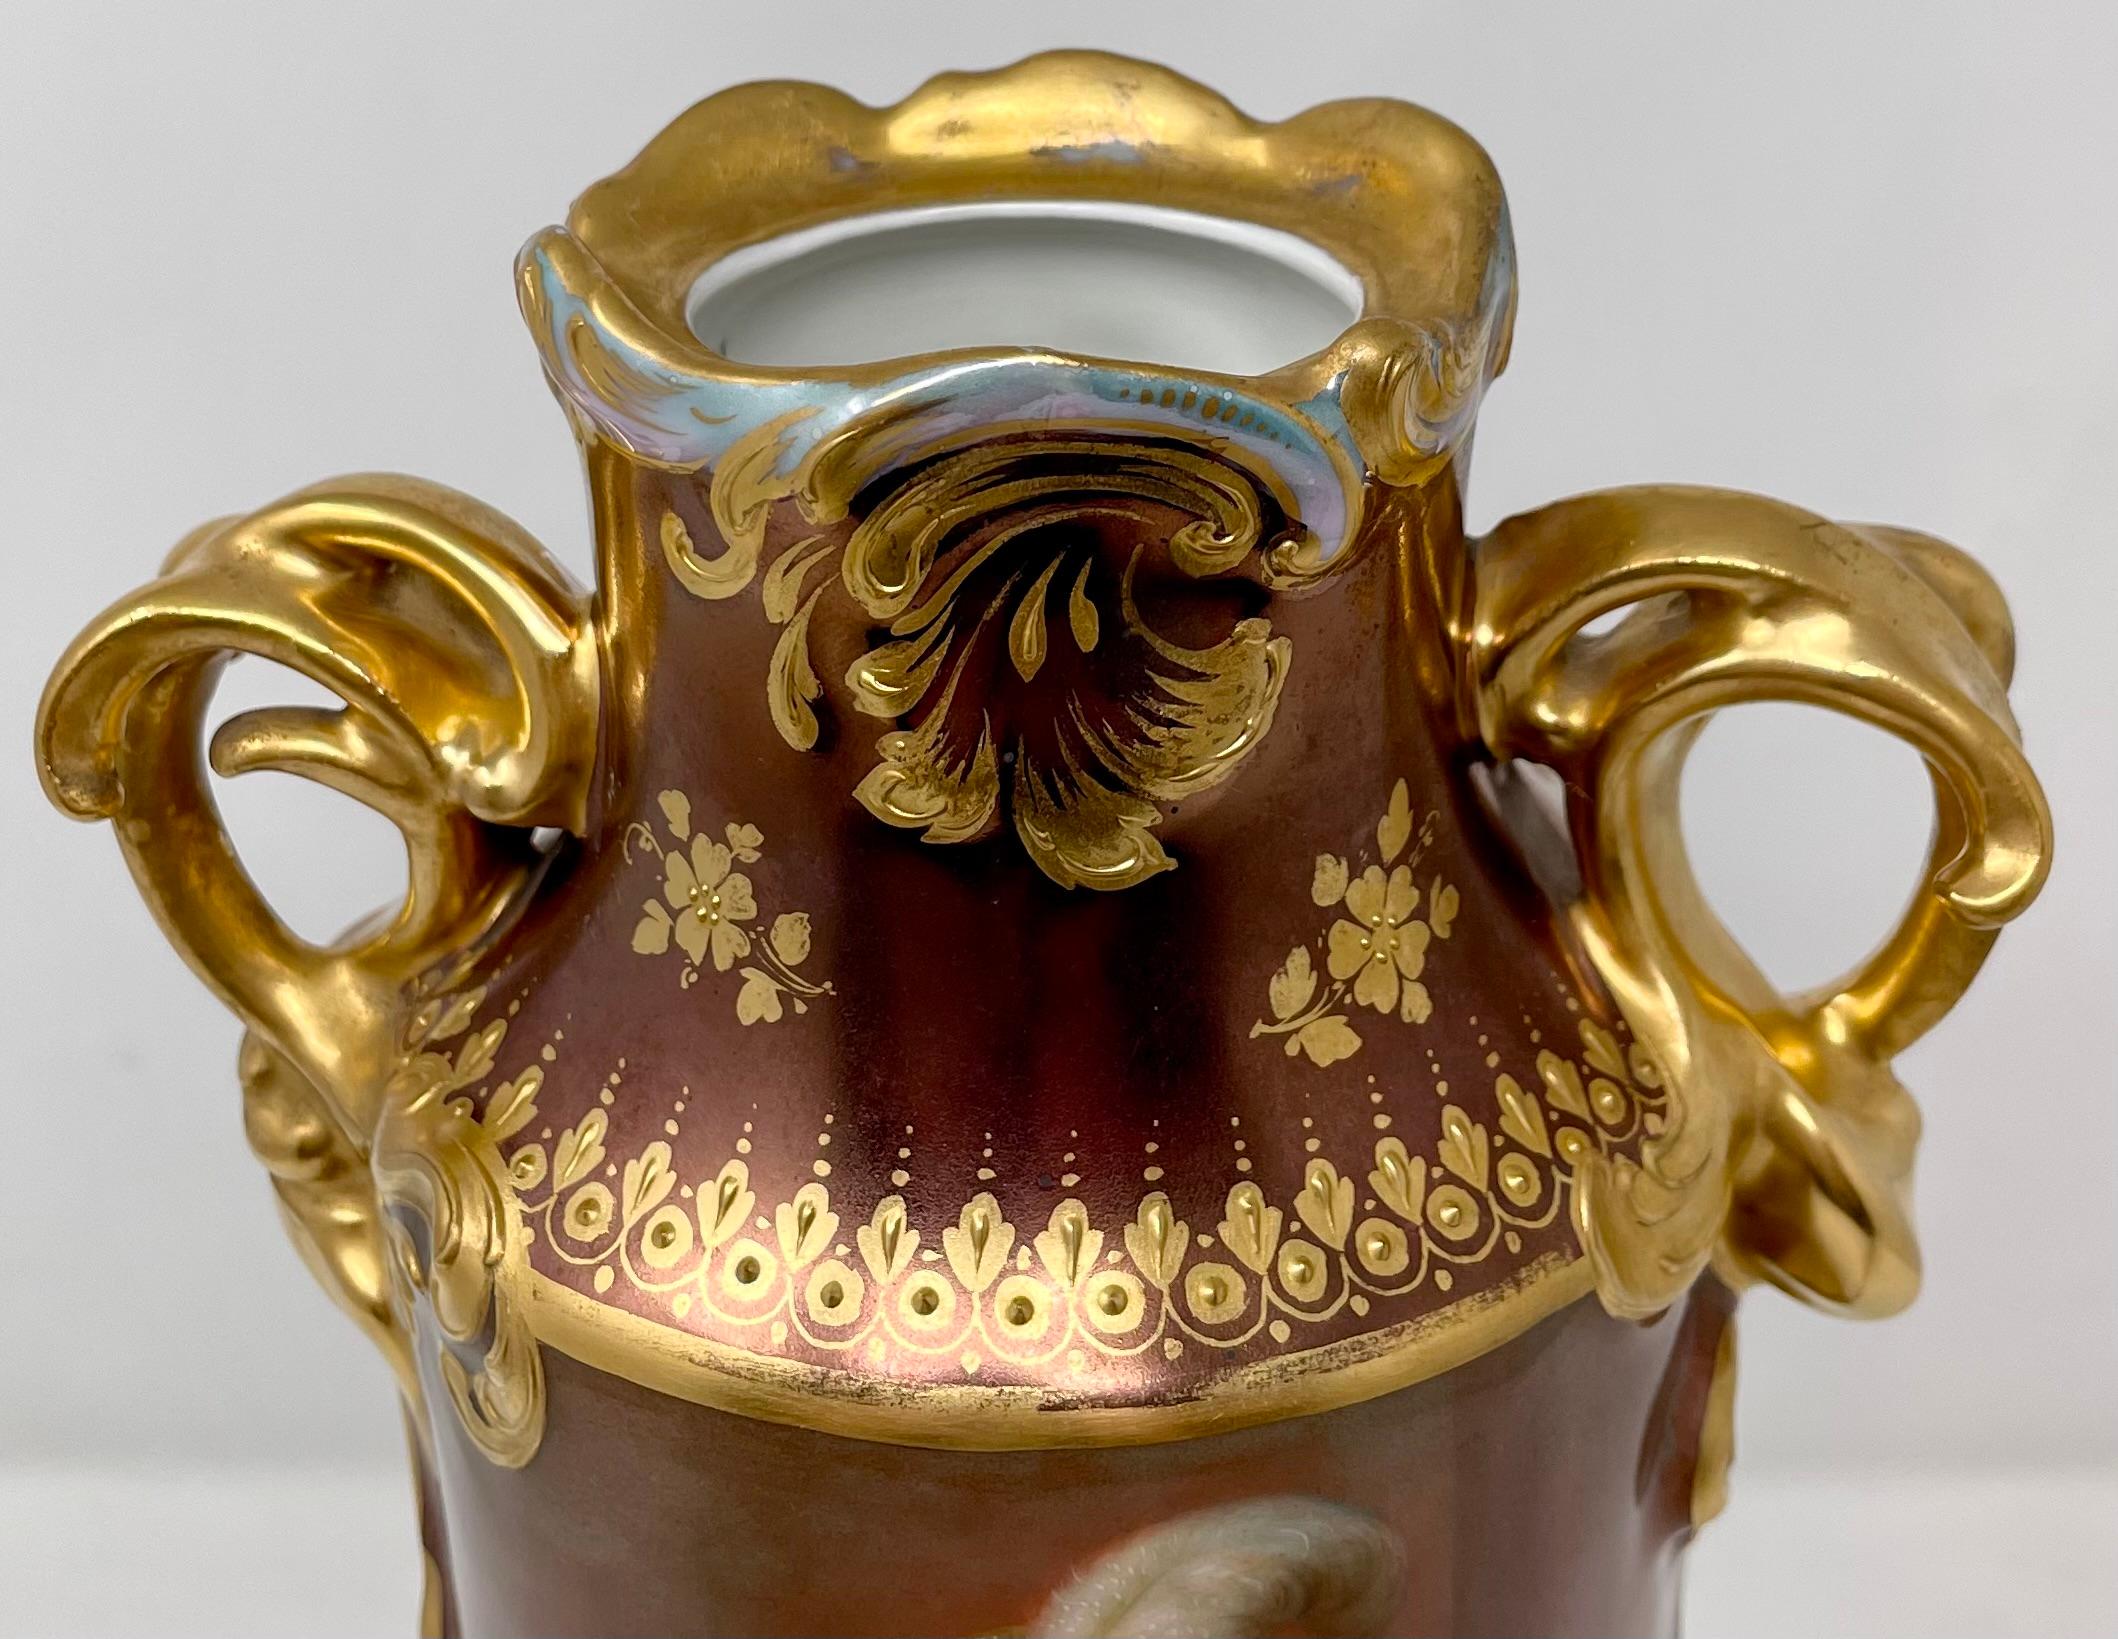 Antique Austrian Porcelain Urn & Cover with Portrait by Thomas Gainsborough For Sale 2